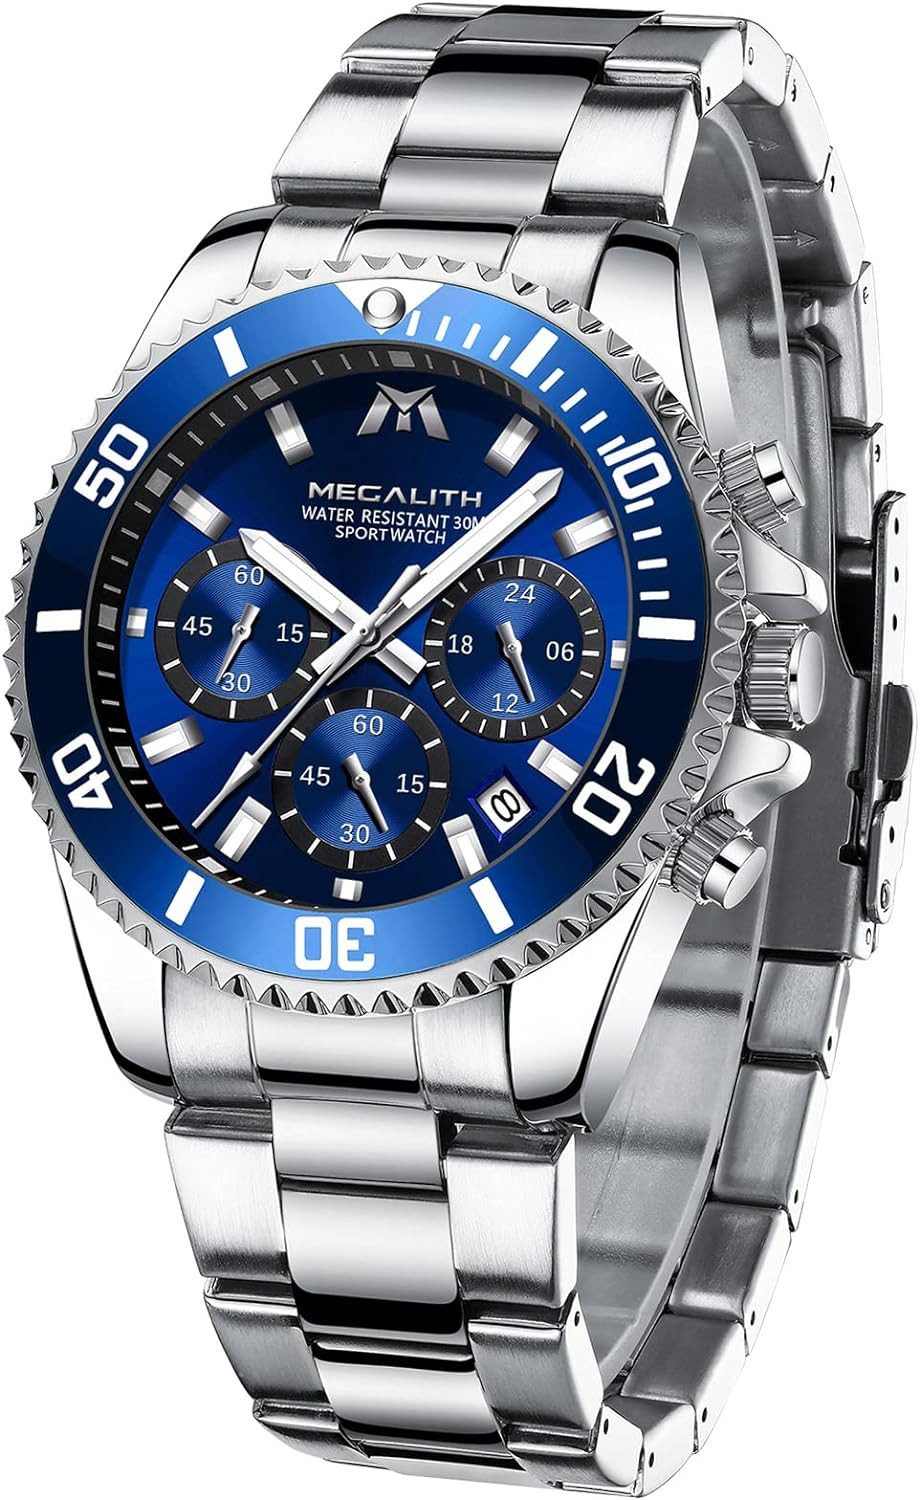 MEGALITH Fur Herren 43mm Chronograph Edelstahl Designer Armband Watch, Wasserdicht Leuchtende Analog Datum Business Elegant Geschenk